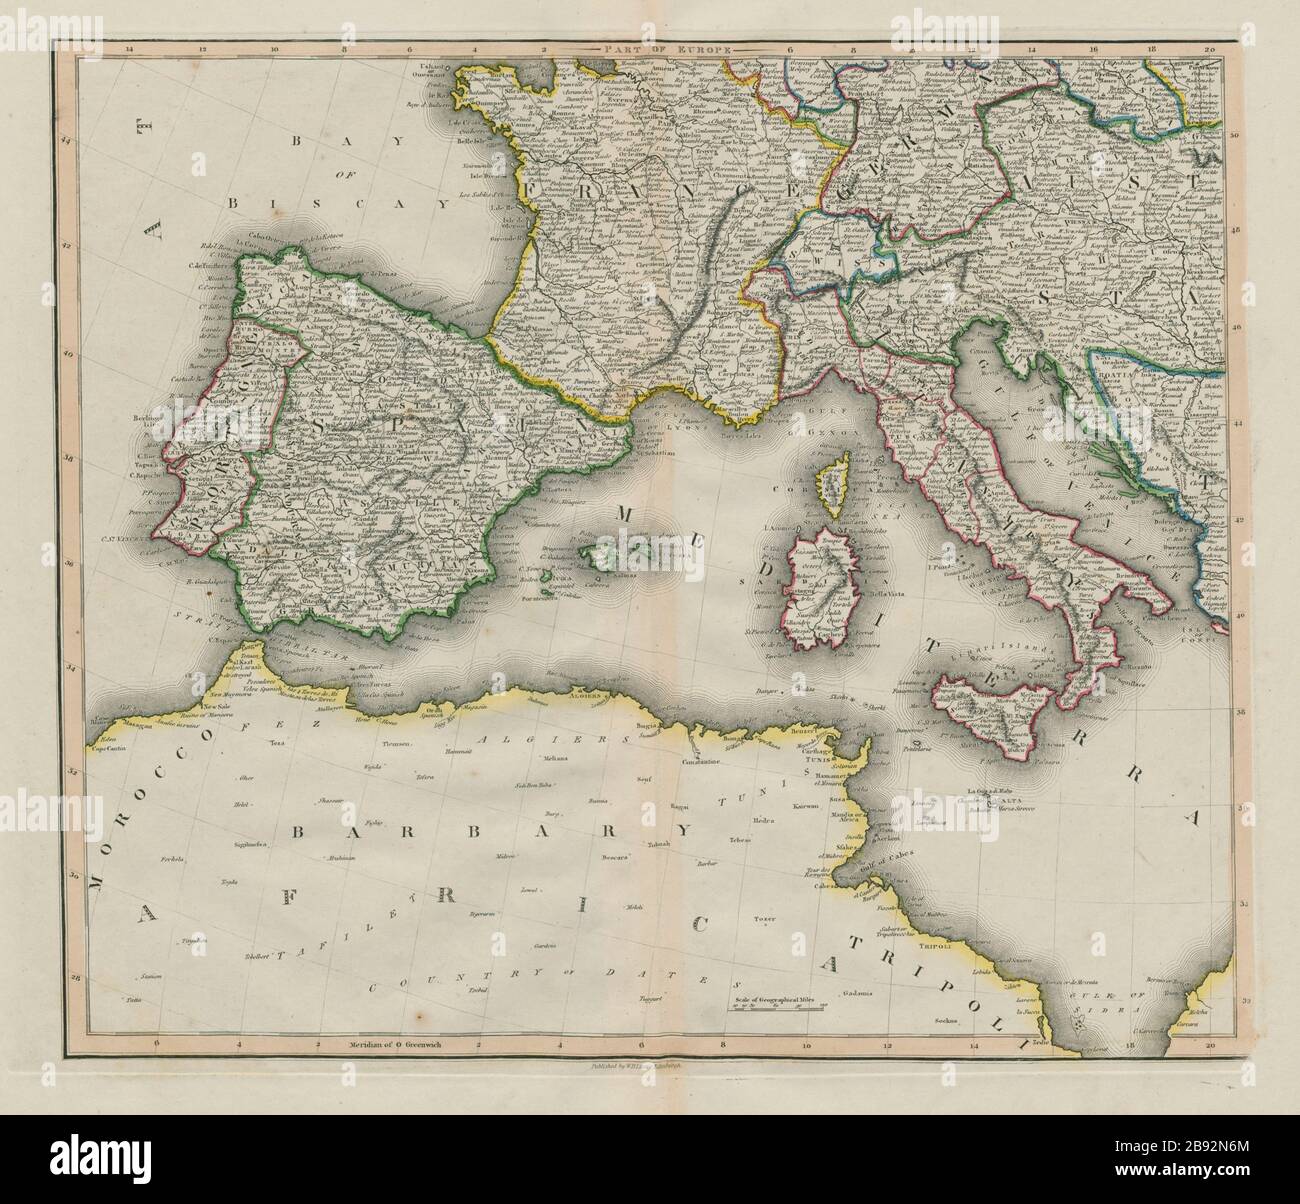 Sudwest Europa Iberia Frankreich Italien Osterreich Mittelmeer Lizars Karte Von 1842 Stockfotografie Alamy